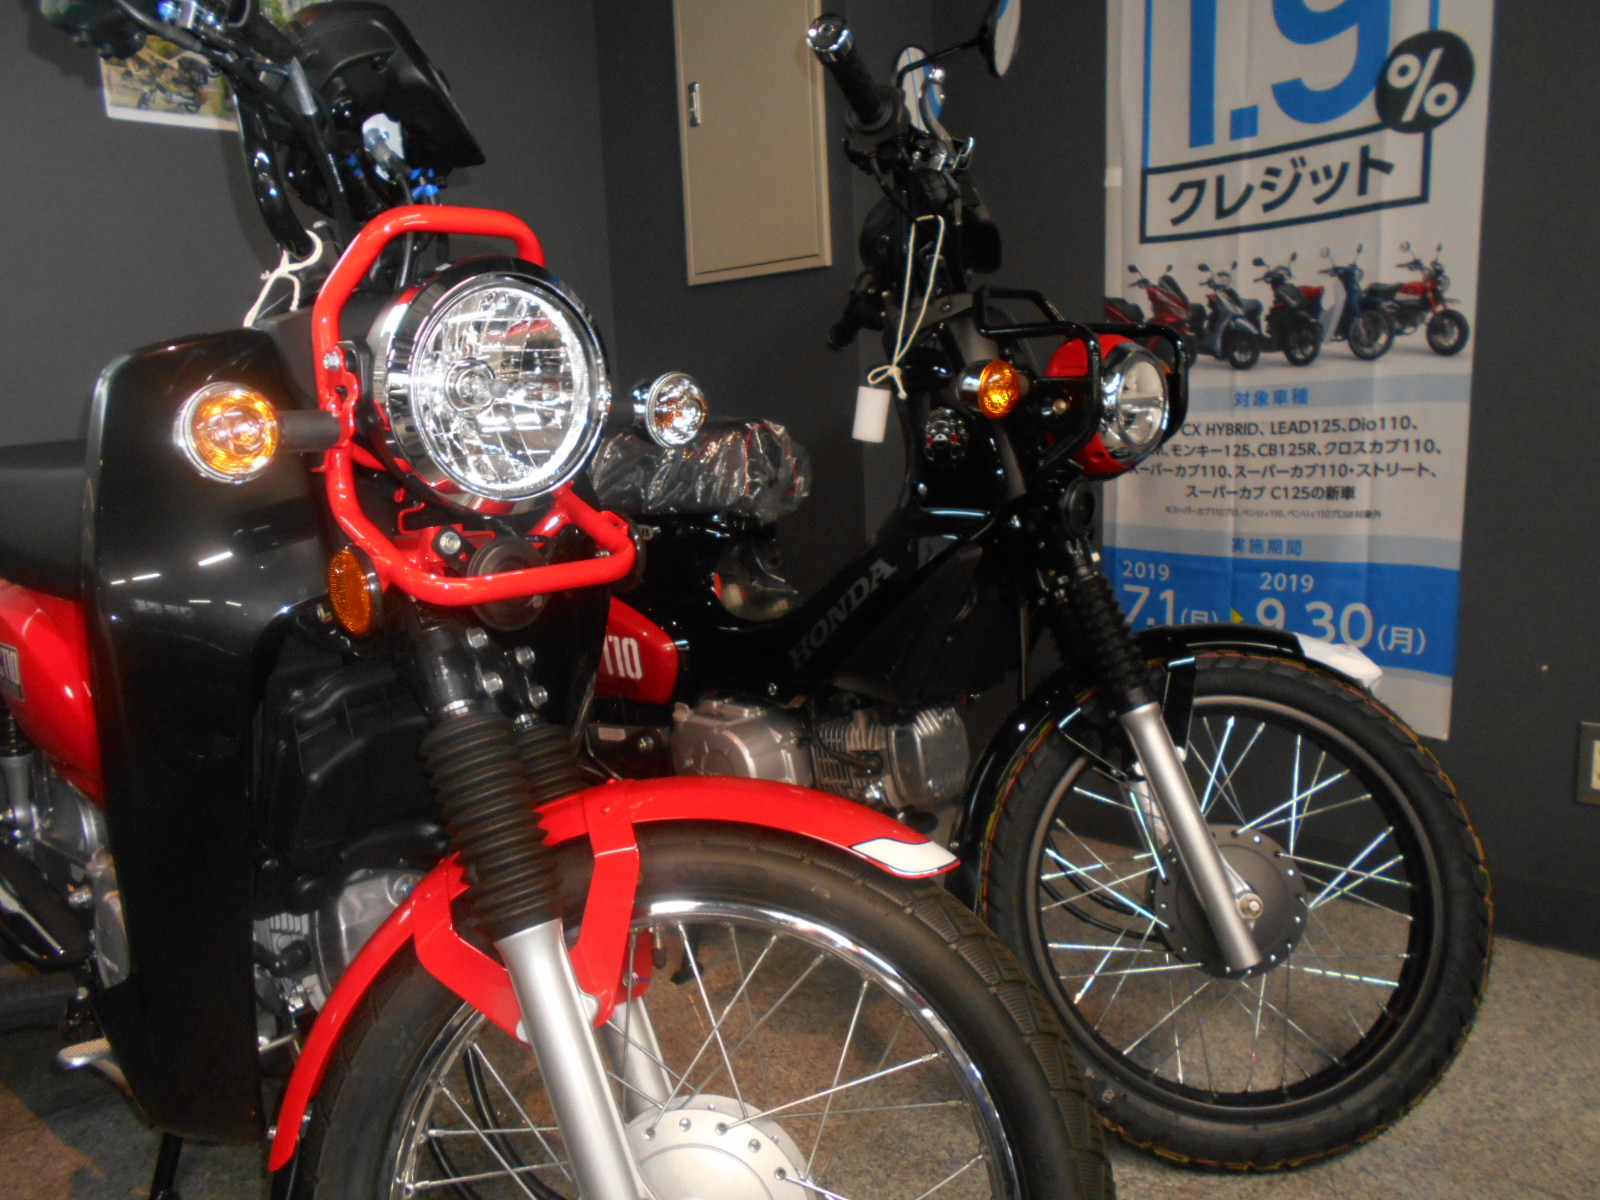 旧型クロスカブ 在庫ございます 最新情報 U Media ユーメディア 中古 バイク 新車バイク探しの決定版 神奈川 東京でバイク探すならユーメディア